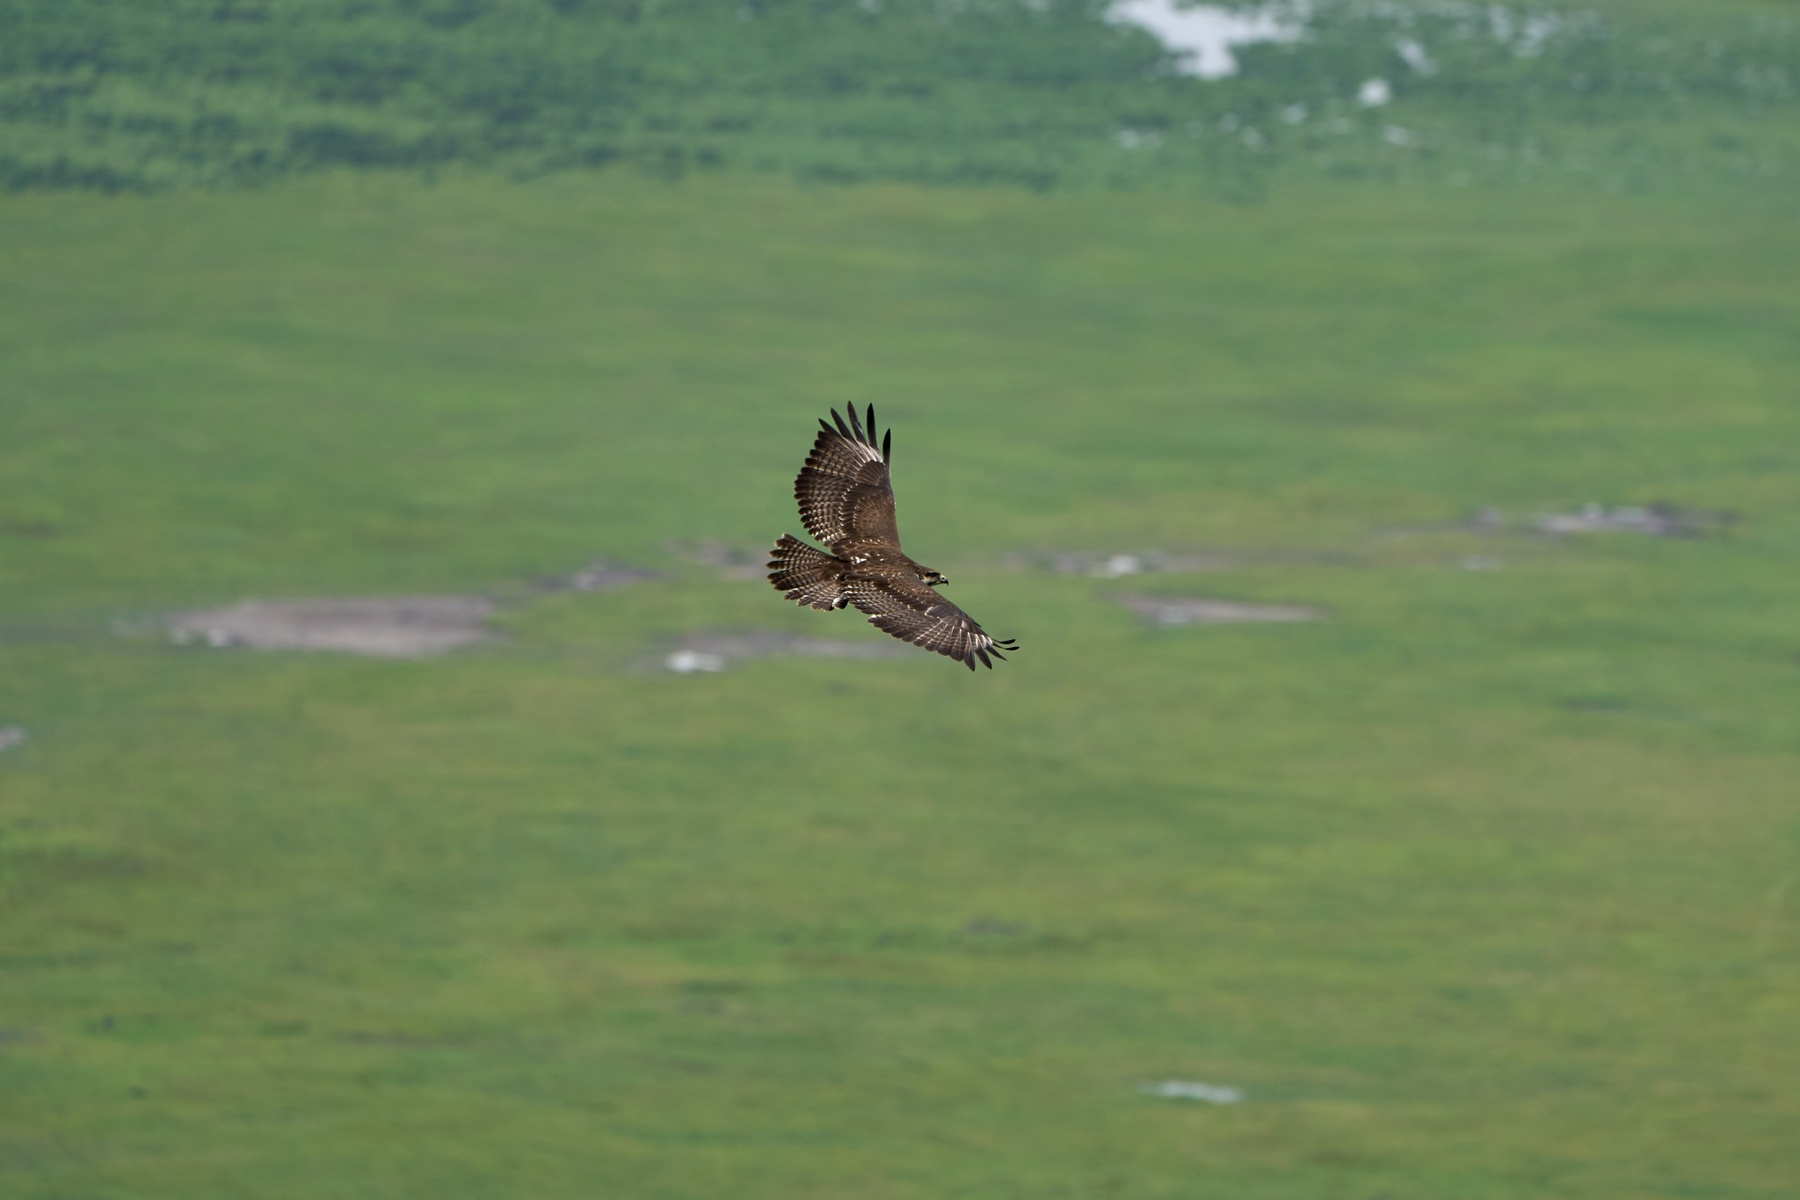 Птица в полете. Вид сверху. Танзания Нгоронгоро Африка природа птицы полет